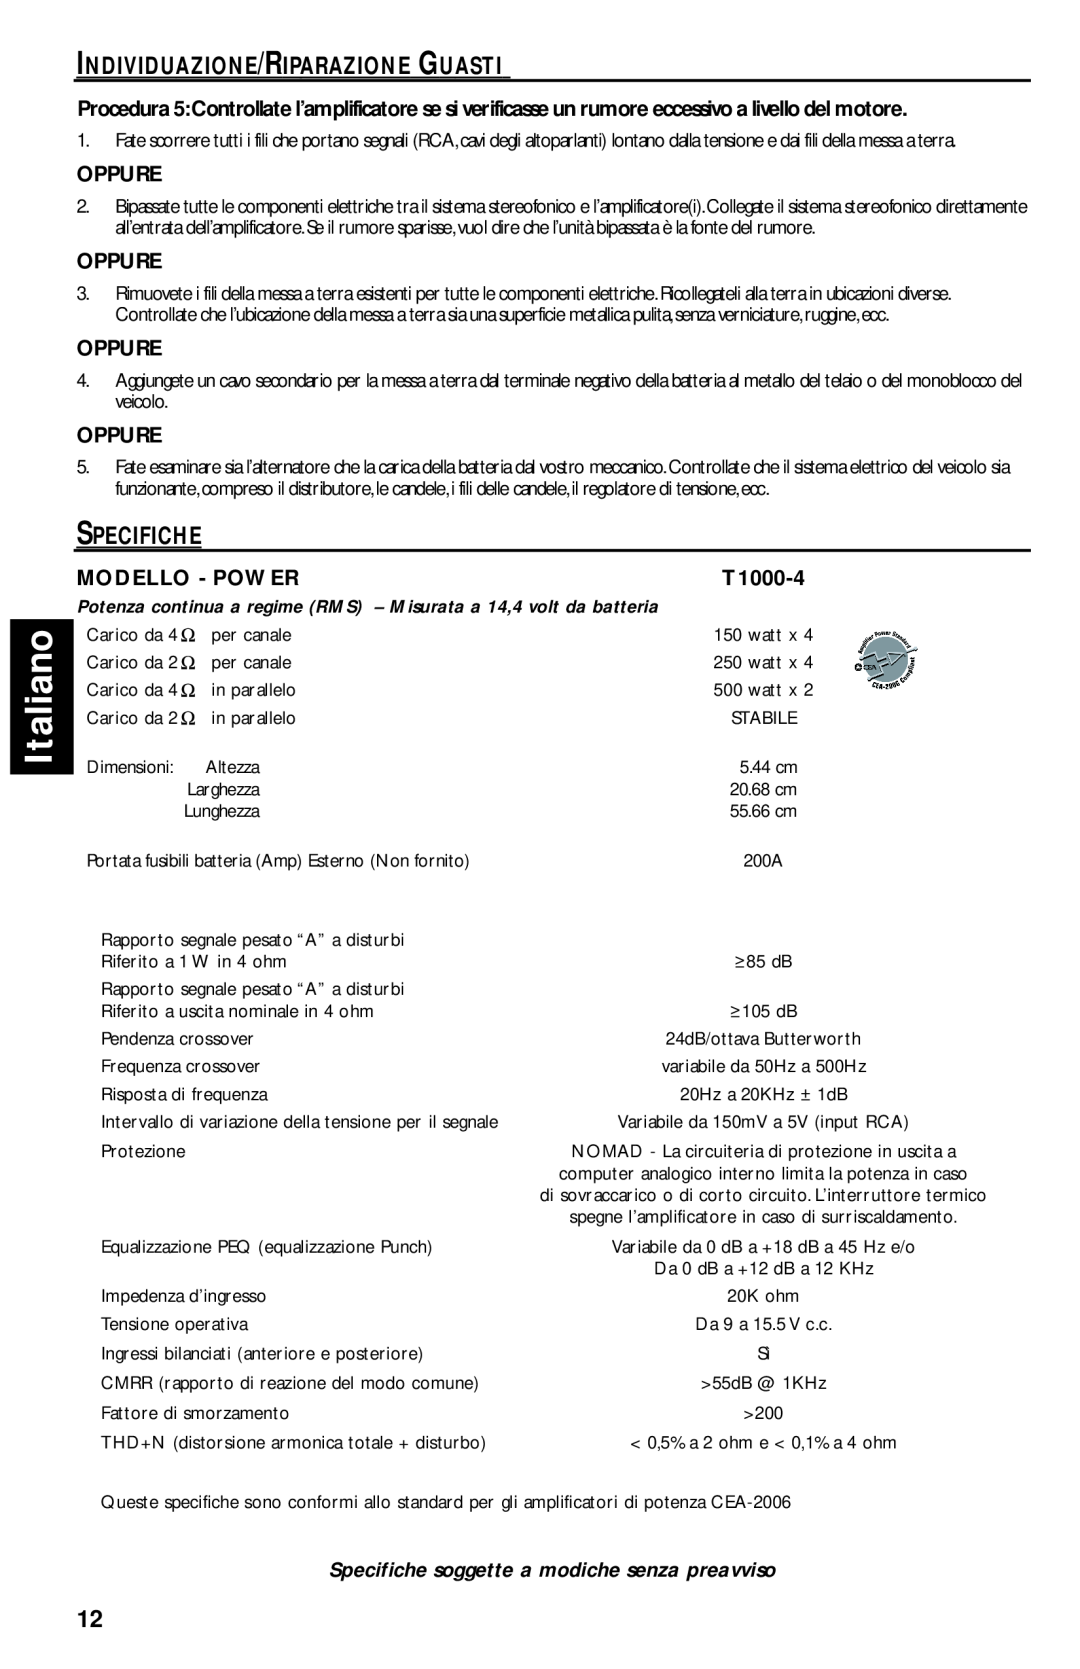 Rockford Fosgate T1000-4 manual Italiano, Individuazione/Riparazione Guasti, Specifiche, Oppure, Modello - Power 